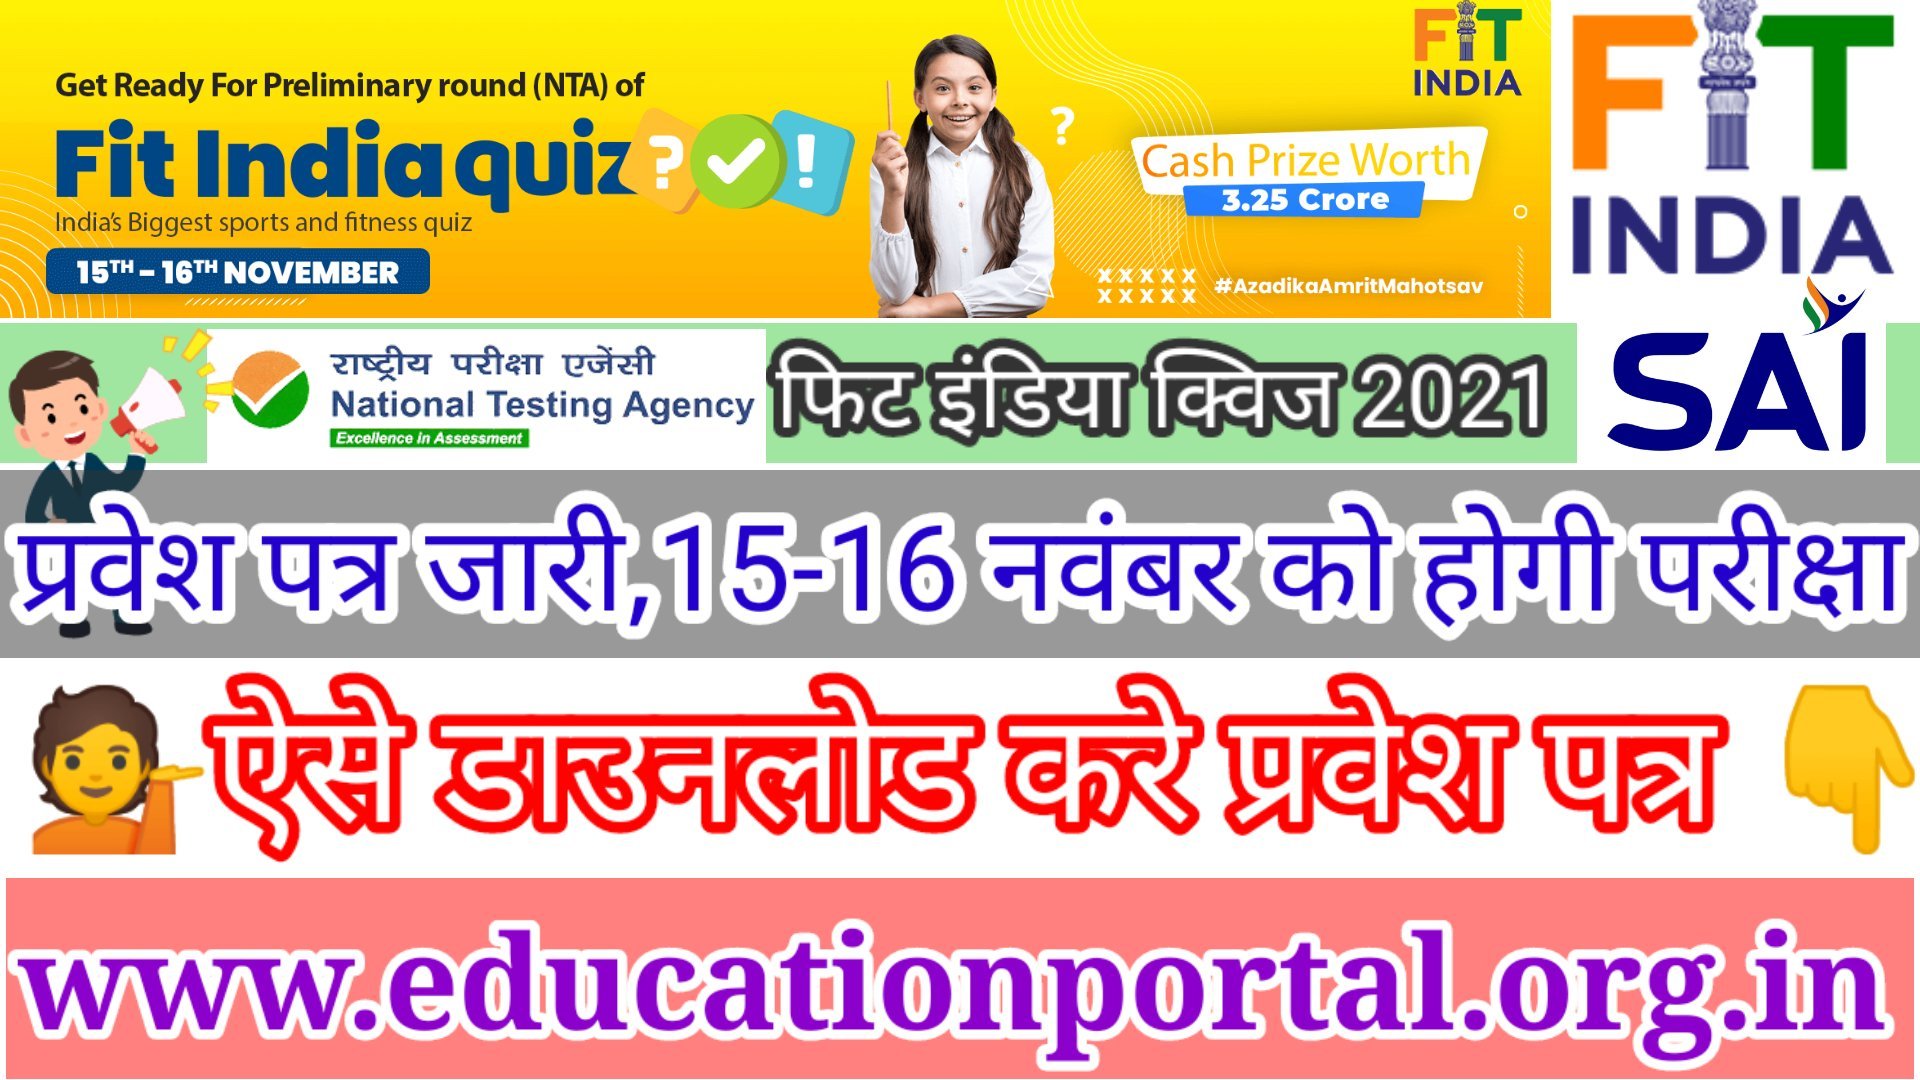 Fit India Quizzes Admit card स्कूली बच्चों के लिए होगी फिट इंडिया क्विज- जीत सकेंगे 3.25 करोड़ के इनाम, प्रवेश पत्र जारी 15-16 नवंबर को होना है प्रथम राउंड की परीक्षा, यह रही फिट इंडिया क्वीज प्रवेश पत्र डाउनलोड करने की डायरेक्ट लिंक 👉